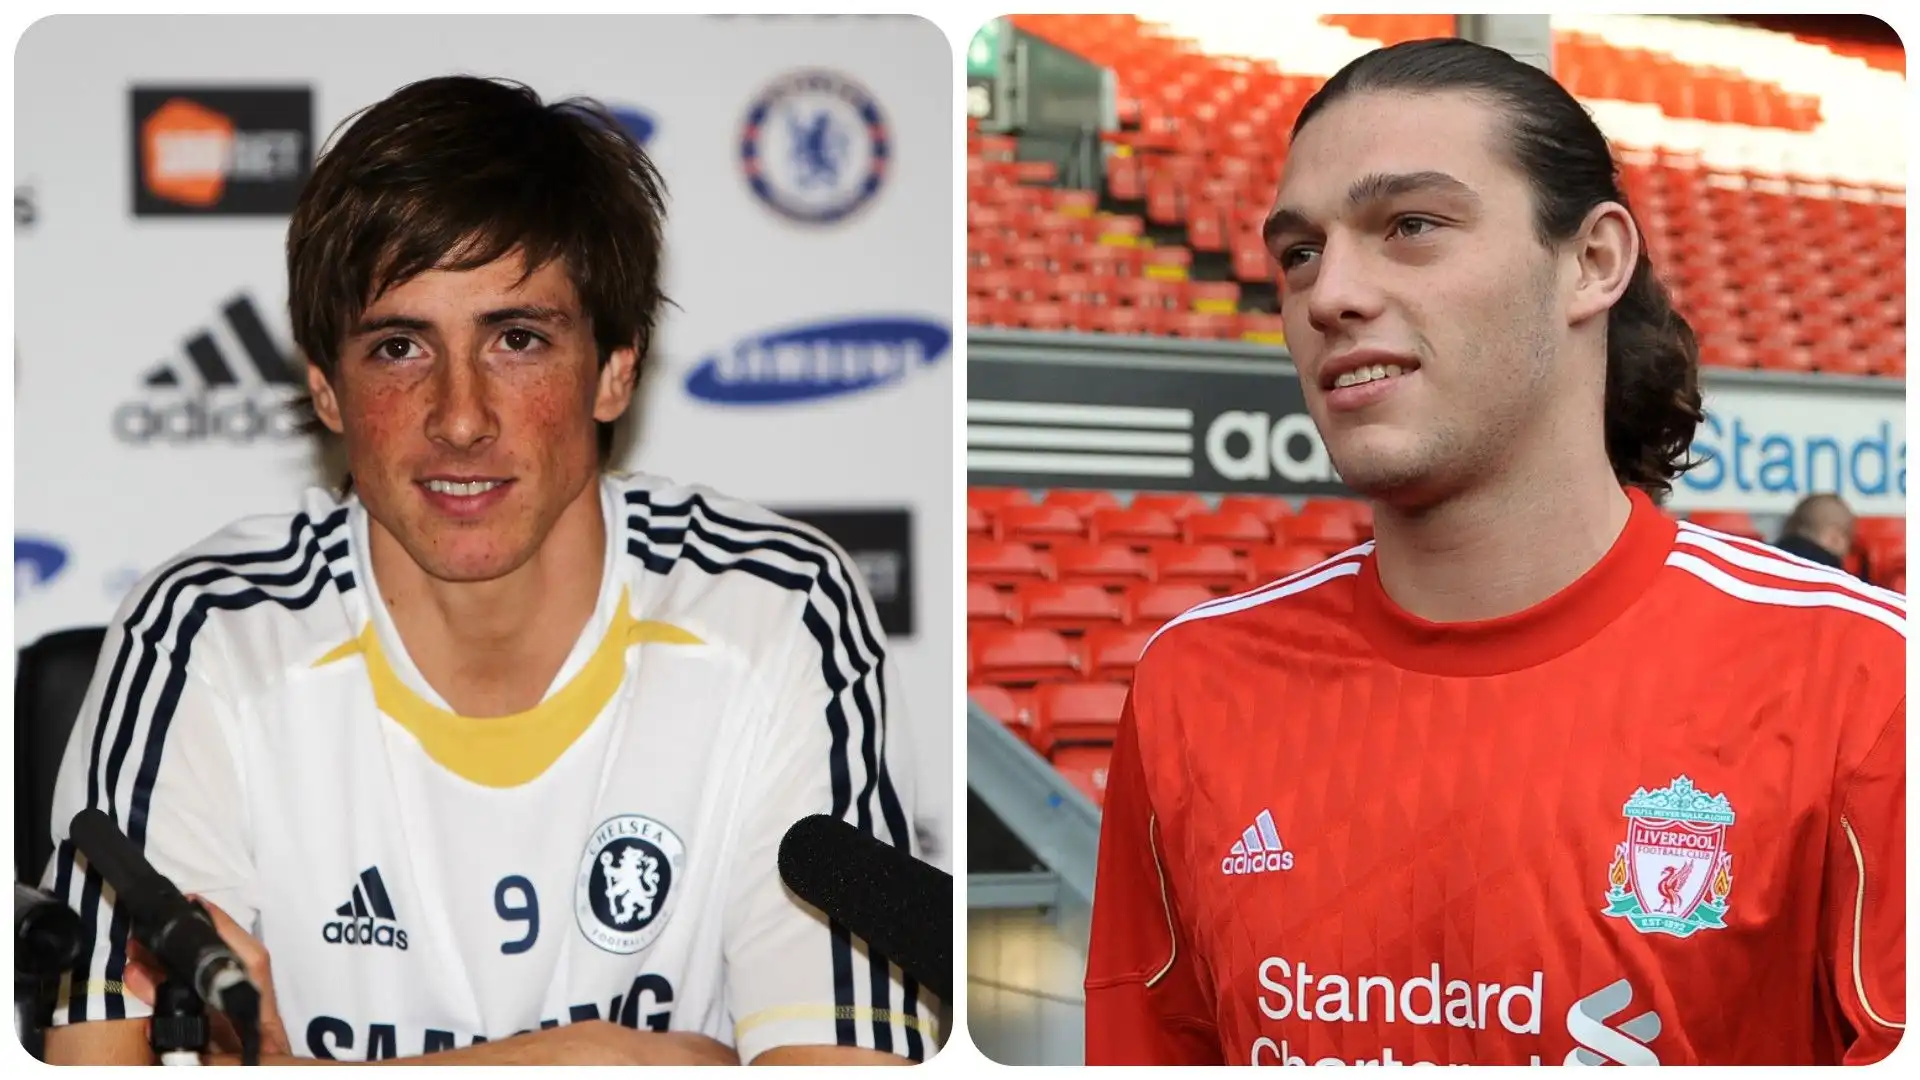 2- Fernando Torres (dal Liverpool al Chelsea per 50 milioni di sterline, 2011) e Andy Carroll (dal Newcastle al Liverpool per 35 milioni di sterline, 2011)